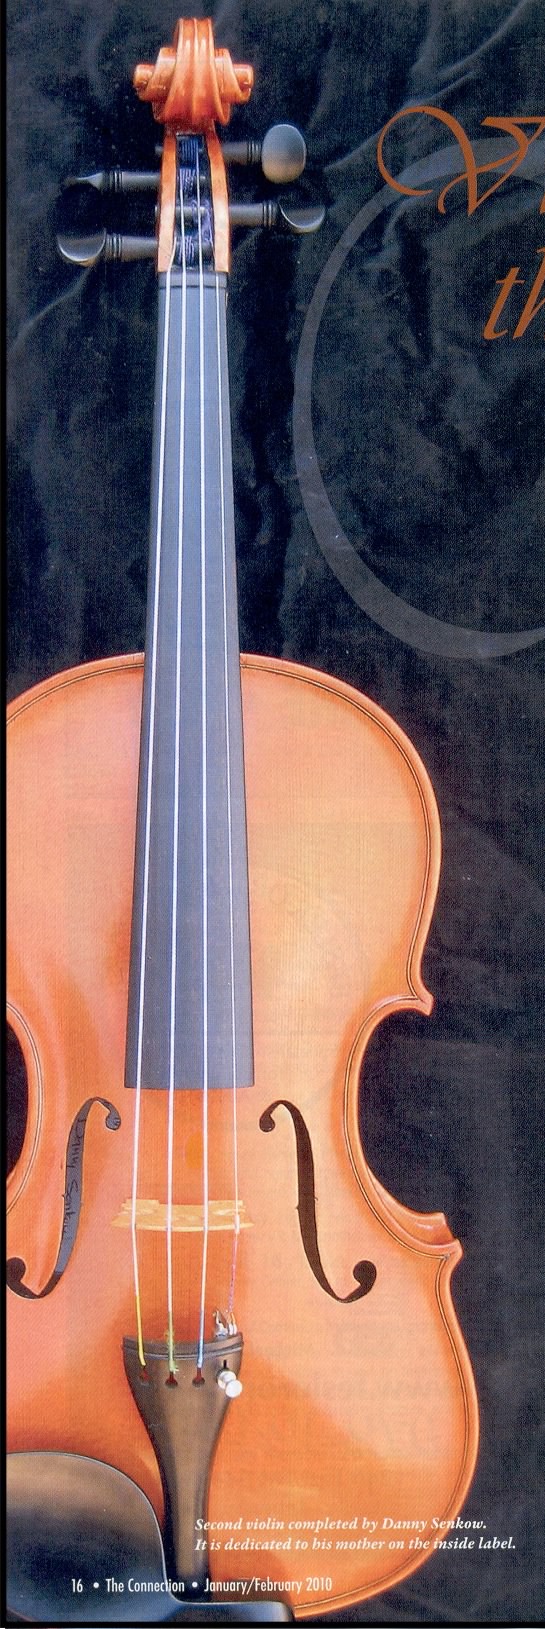 dps_violin